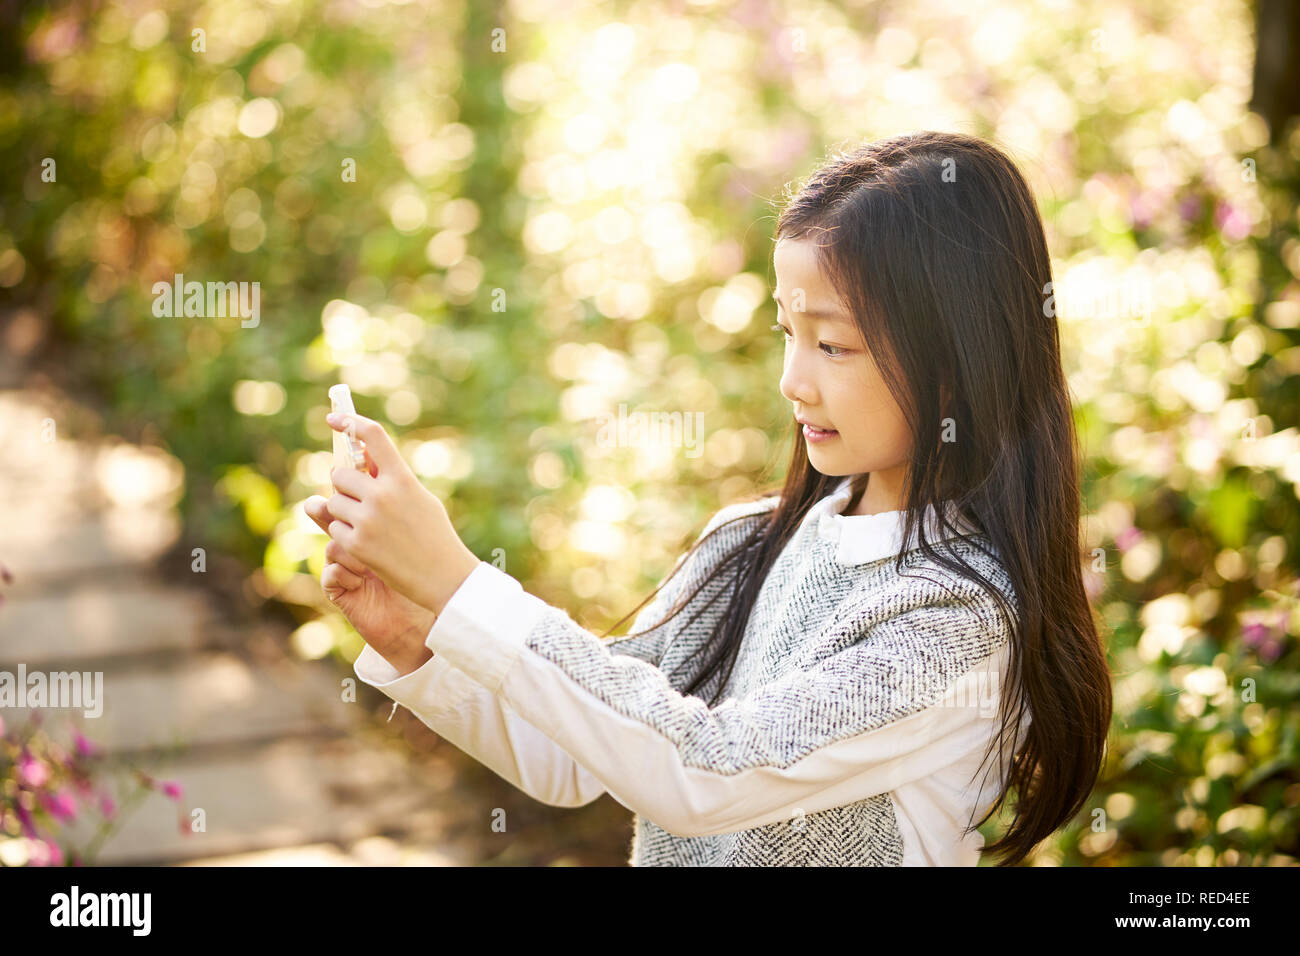 Belle petite fille asiatique aux cheveux longs en tenant une fleur fond contre selfies using cellphone Banque D'Images